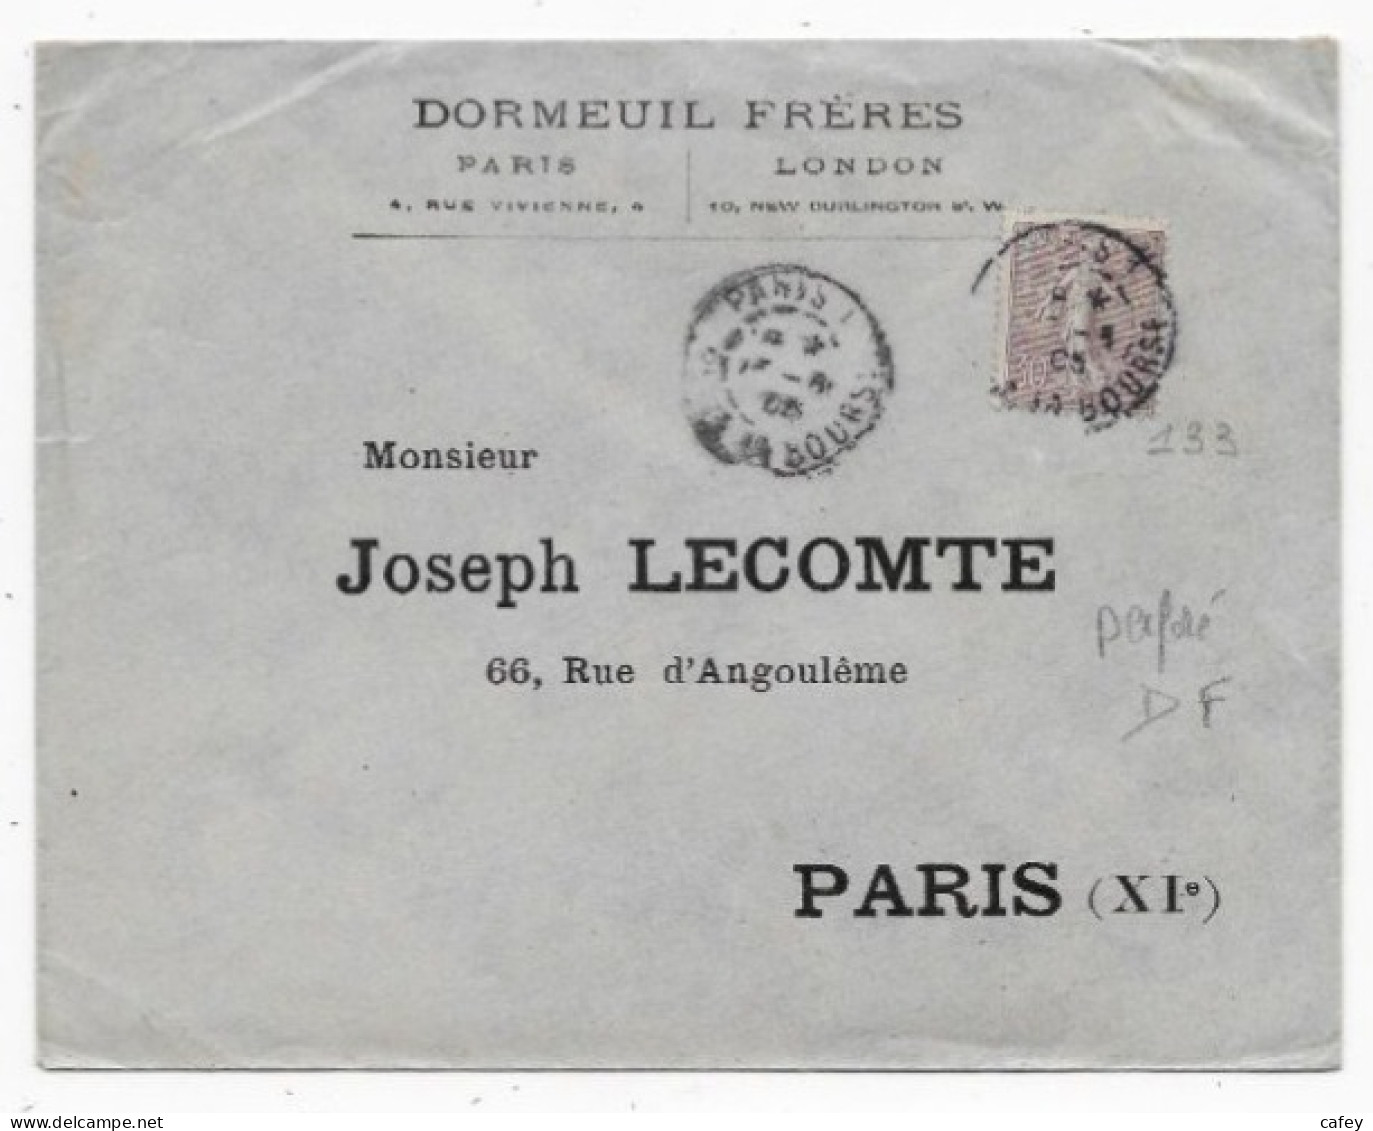 Lettre De PARIS P/ PARIS 1905 Timbre 30c SEMEUSE LIGNEE Perforé DF Entête DORMEUIL FRERES Voir Tarif - 1877-1920: Semi Modern Period